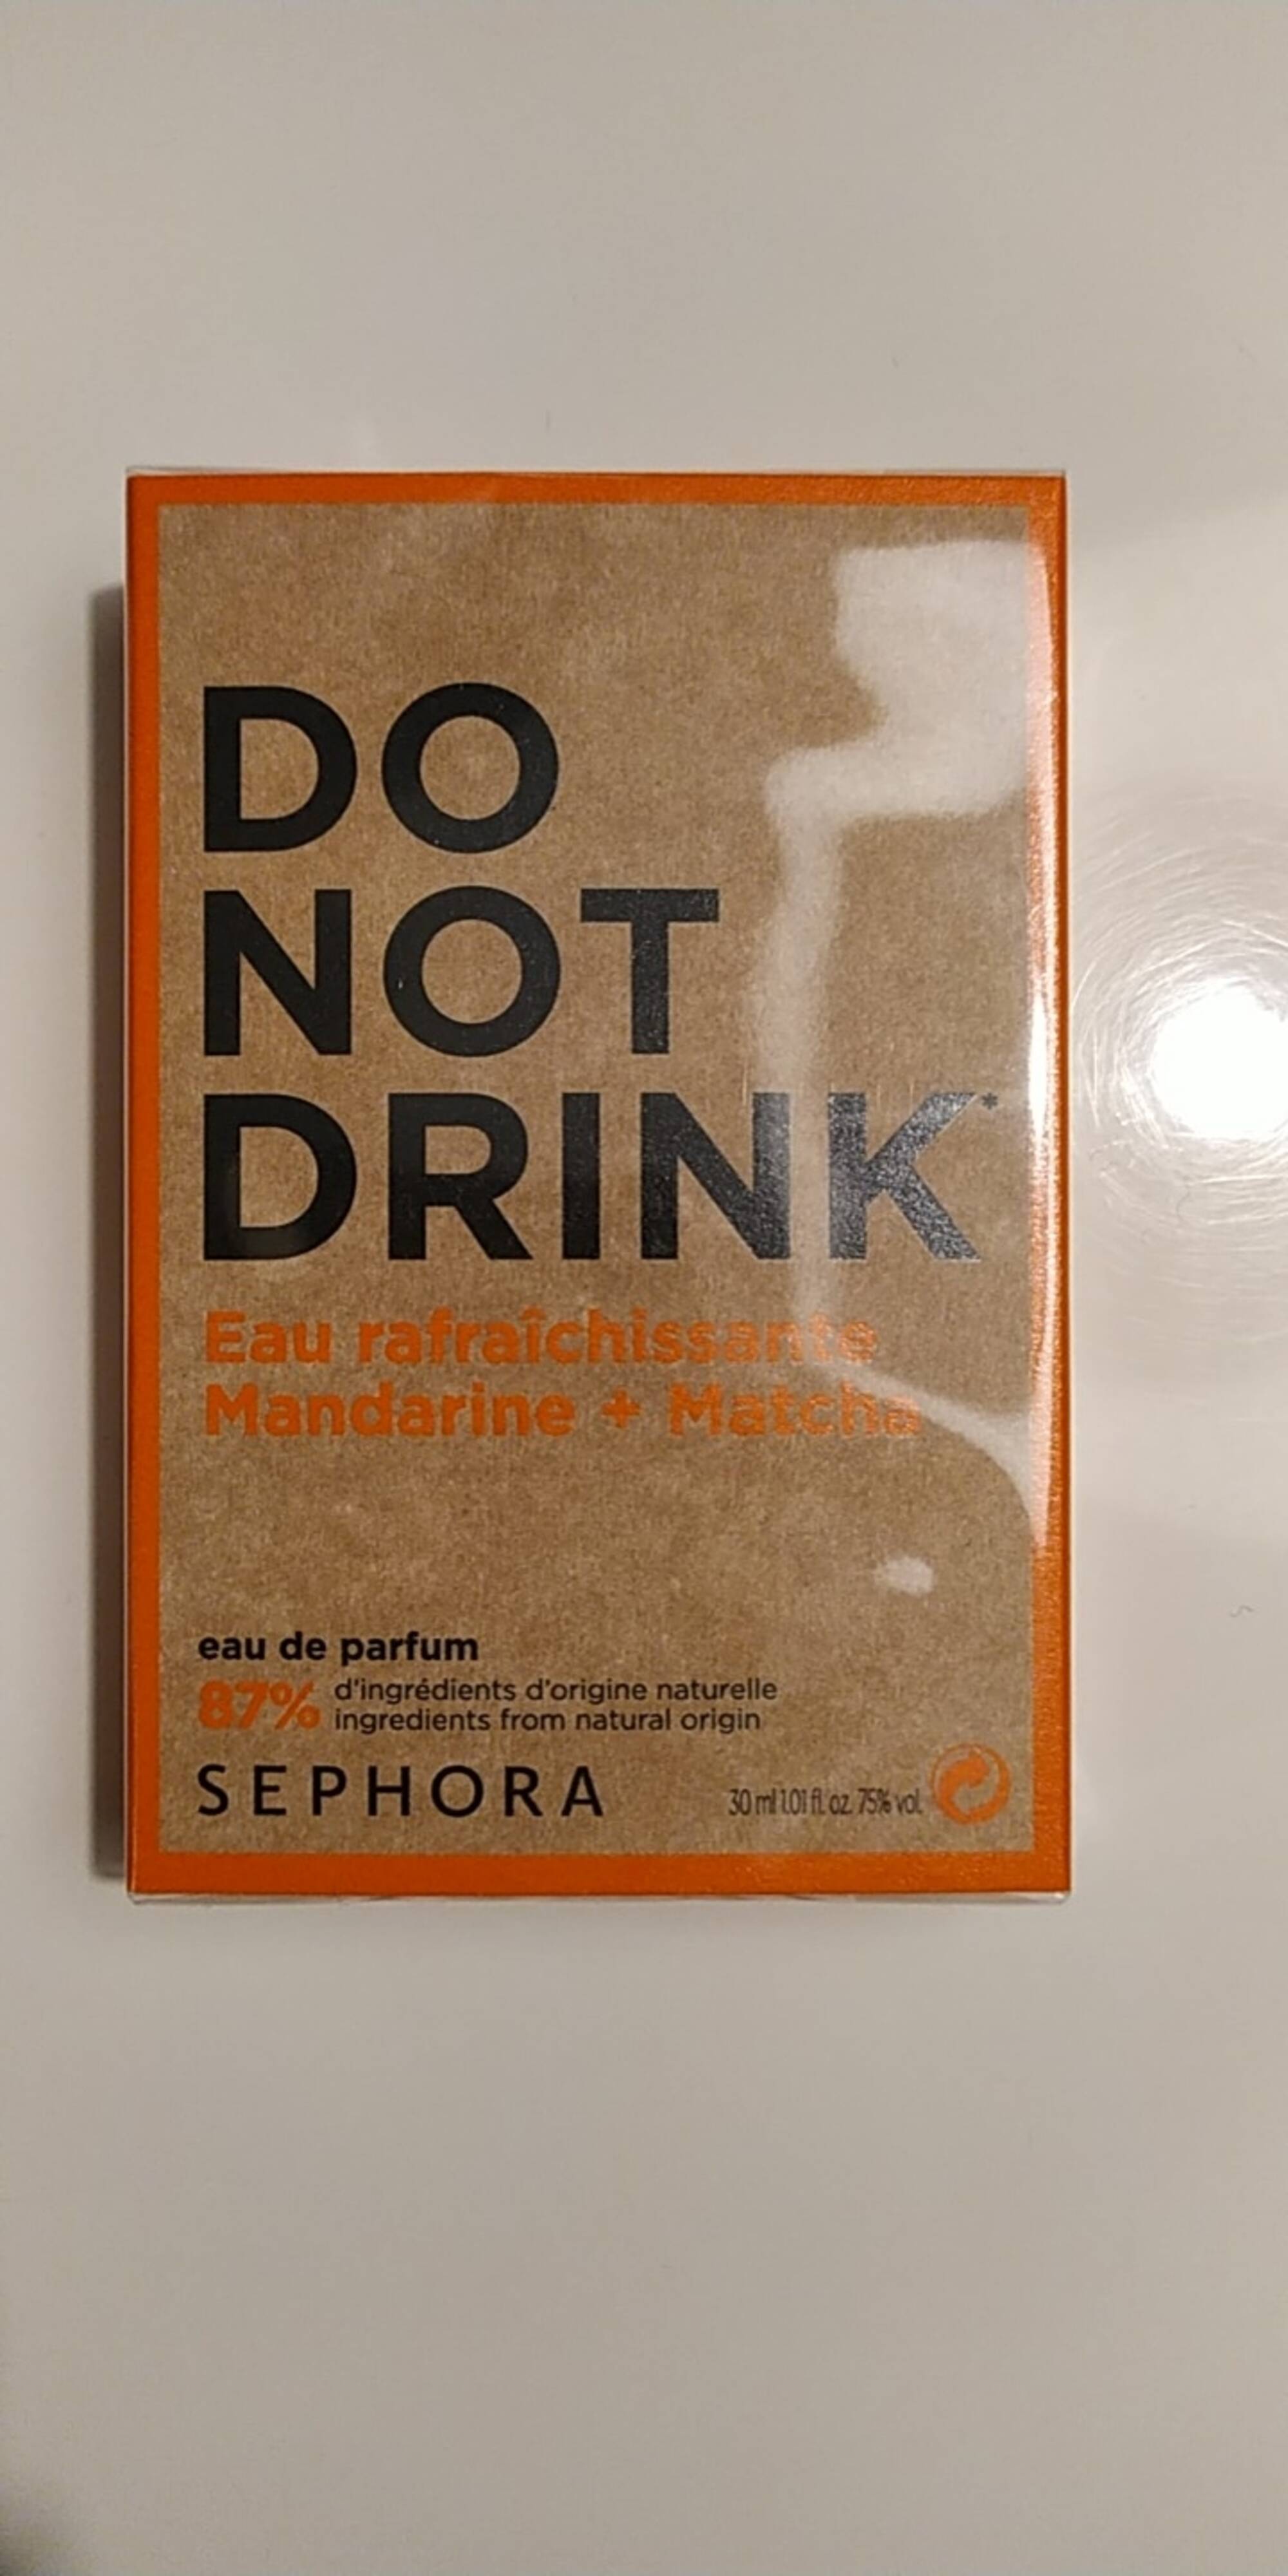 SEPHORA - Do not drink - Eau de parfum eau rafraîchissante mandarine + matcha